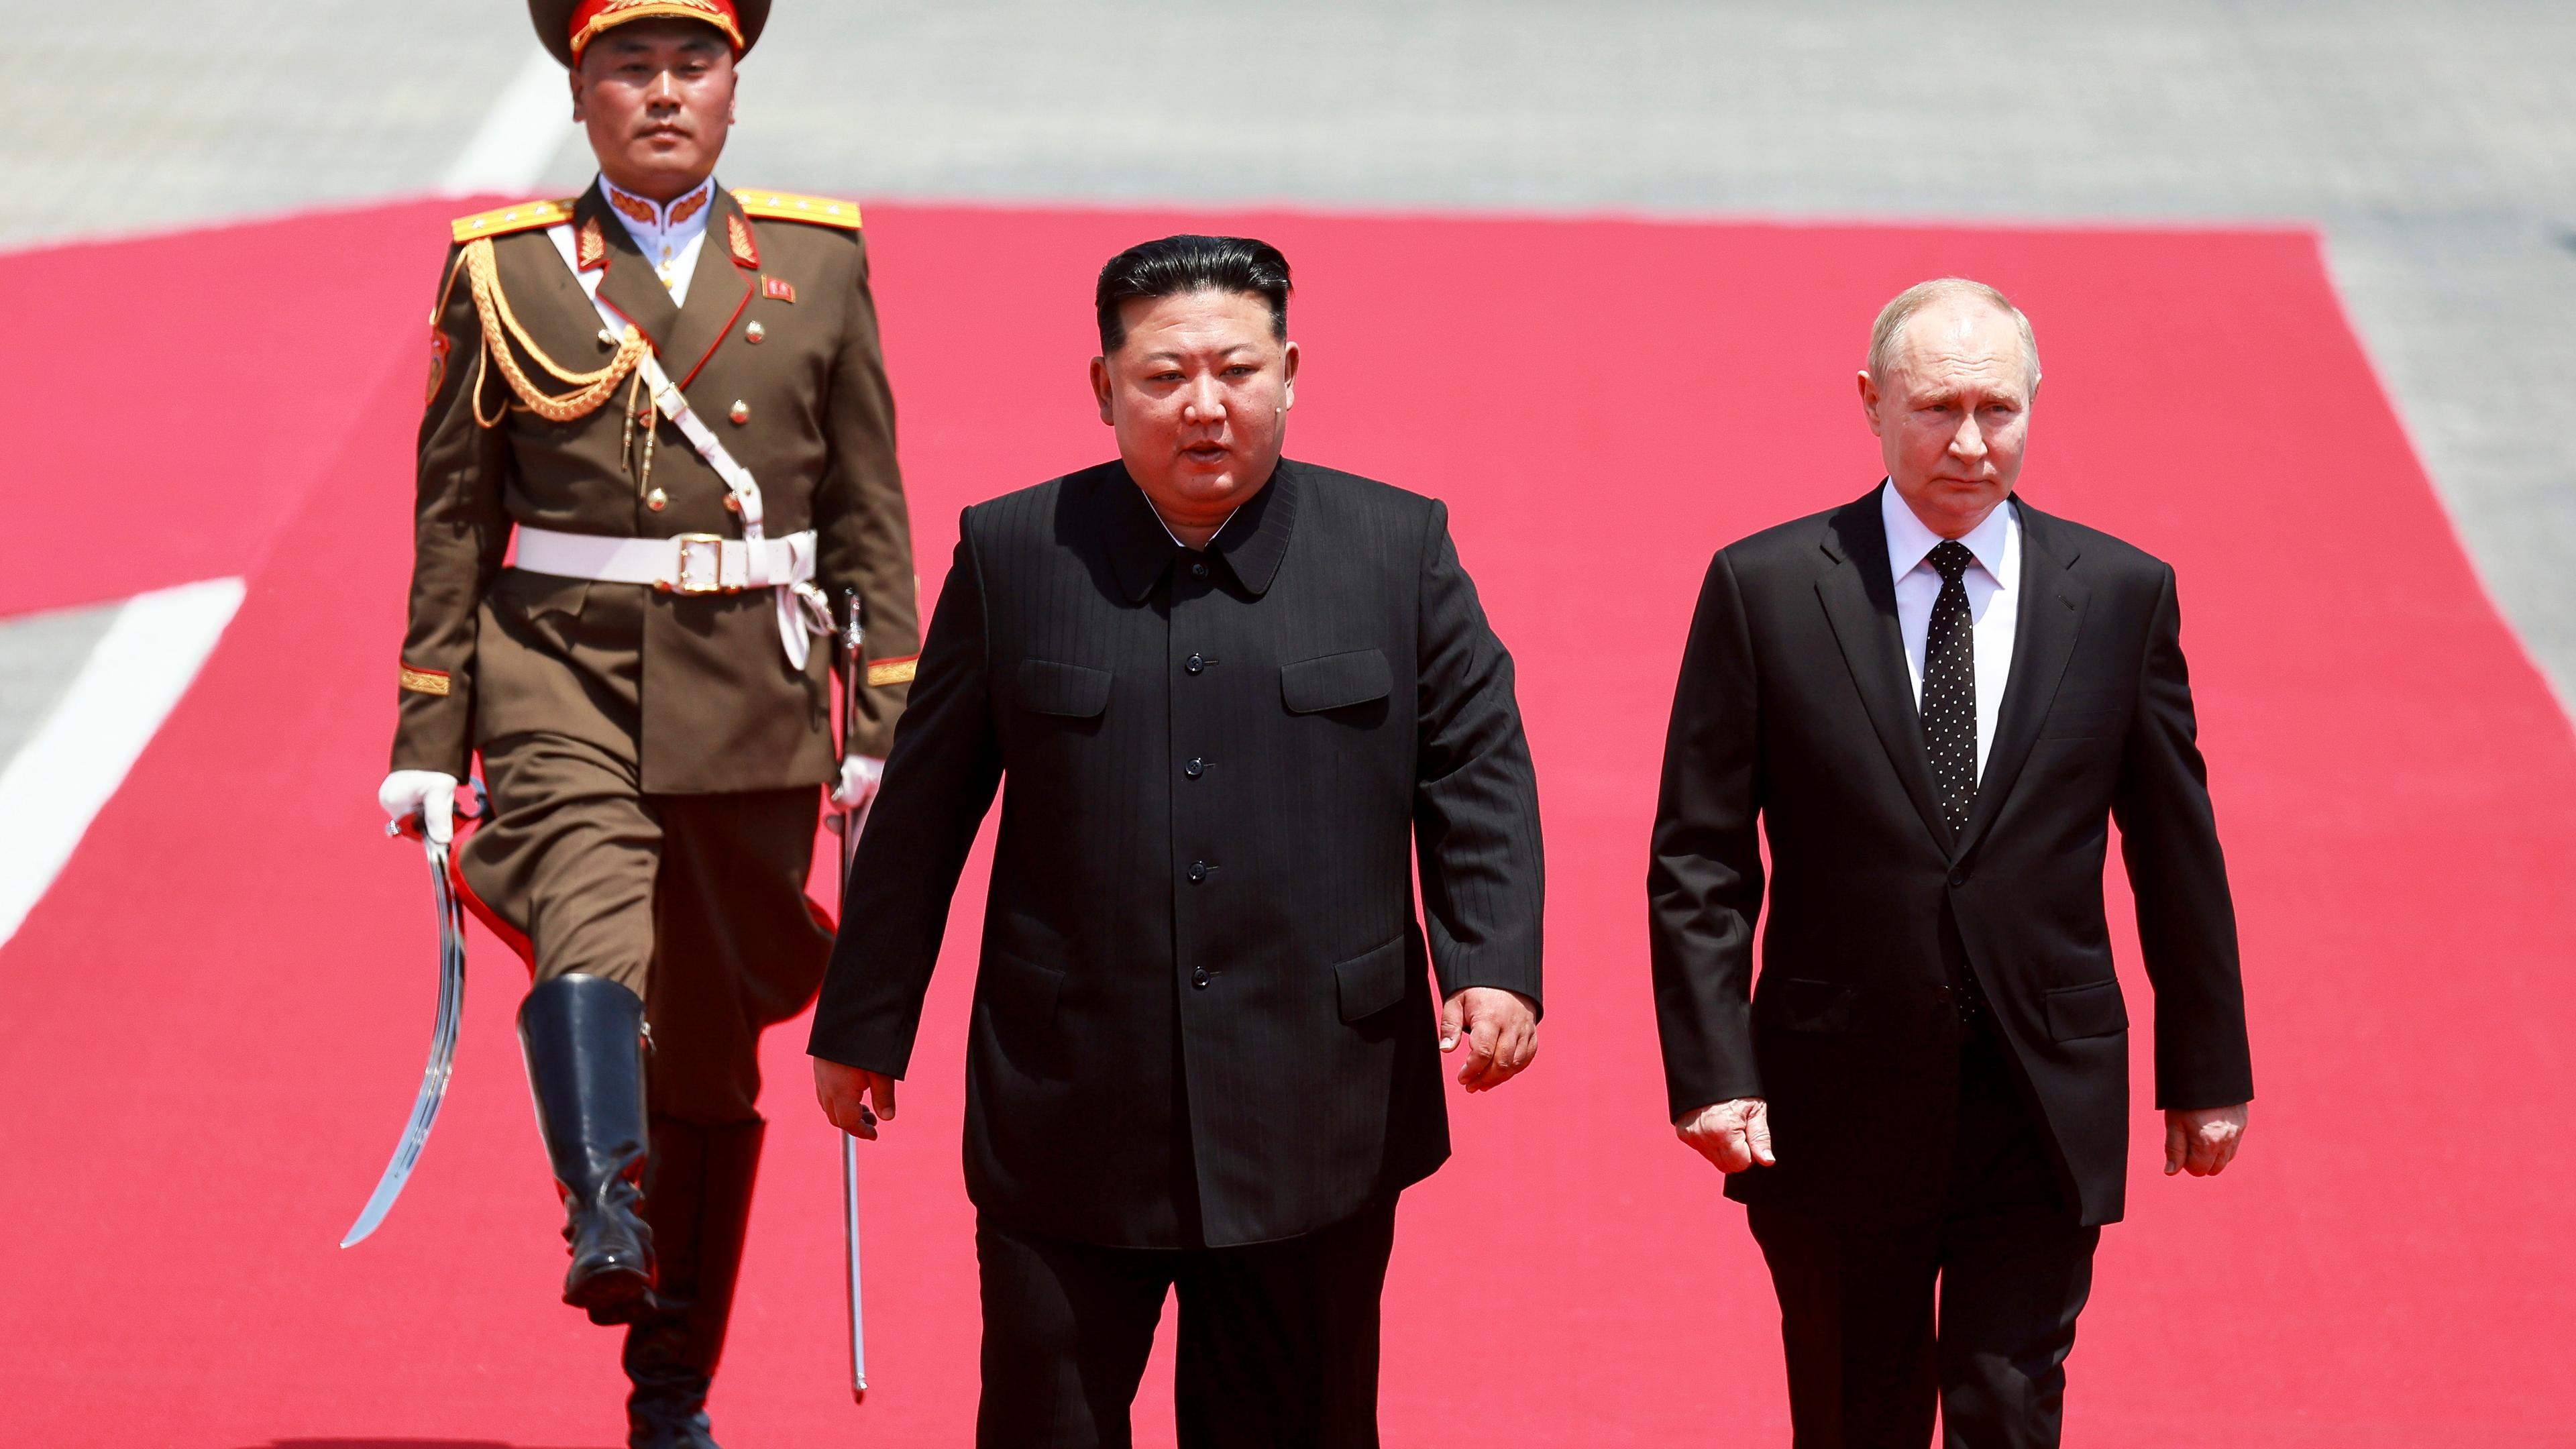 Nordkorea, Pjöngjang: Auf diesem von der staatlichen russischen Nachrichtenagentur Sputnik via AP veröffentlichten Foto nehmen der russische Präsident Wladimir Putin (r) und der nordkoreanische Staatschef Kim Jong Un an der offiziellen Begrüßungszeremonie auf dem Kim-Il-Sung-Platz teil.